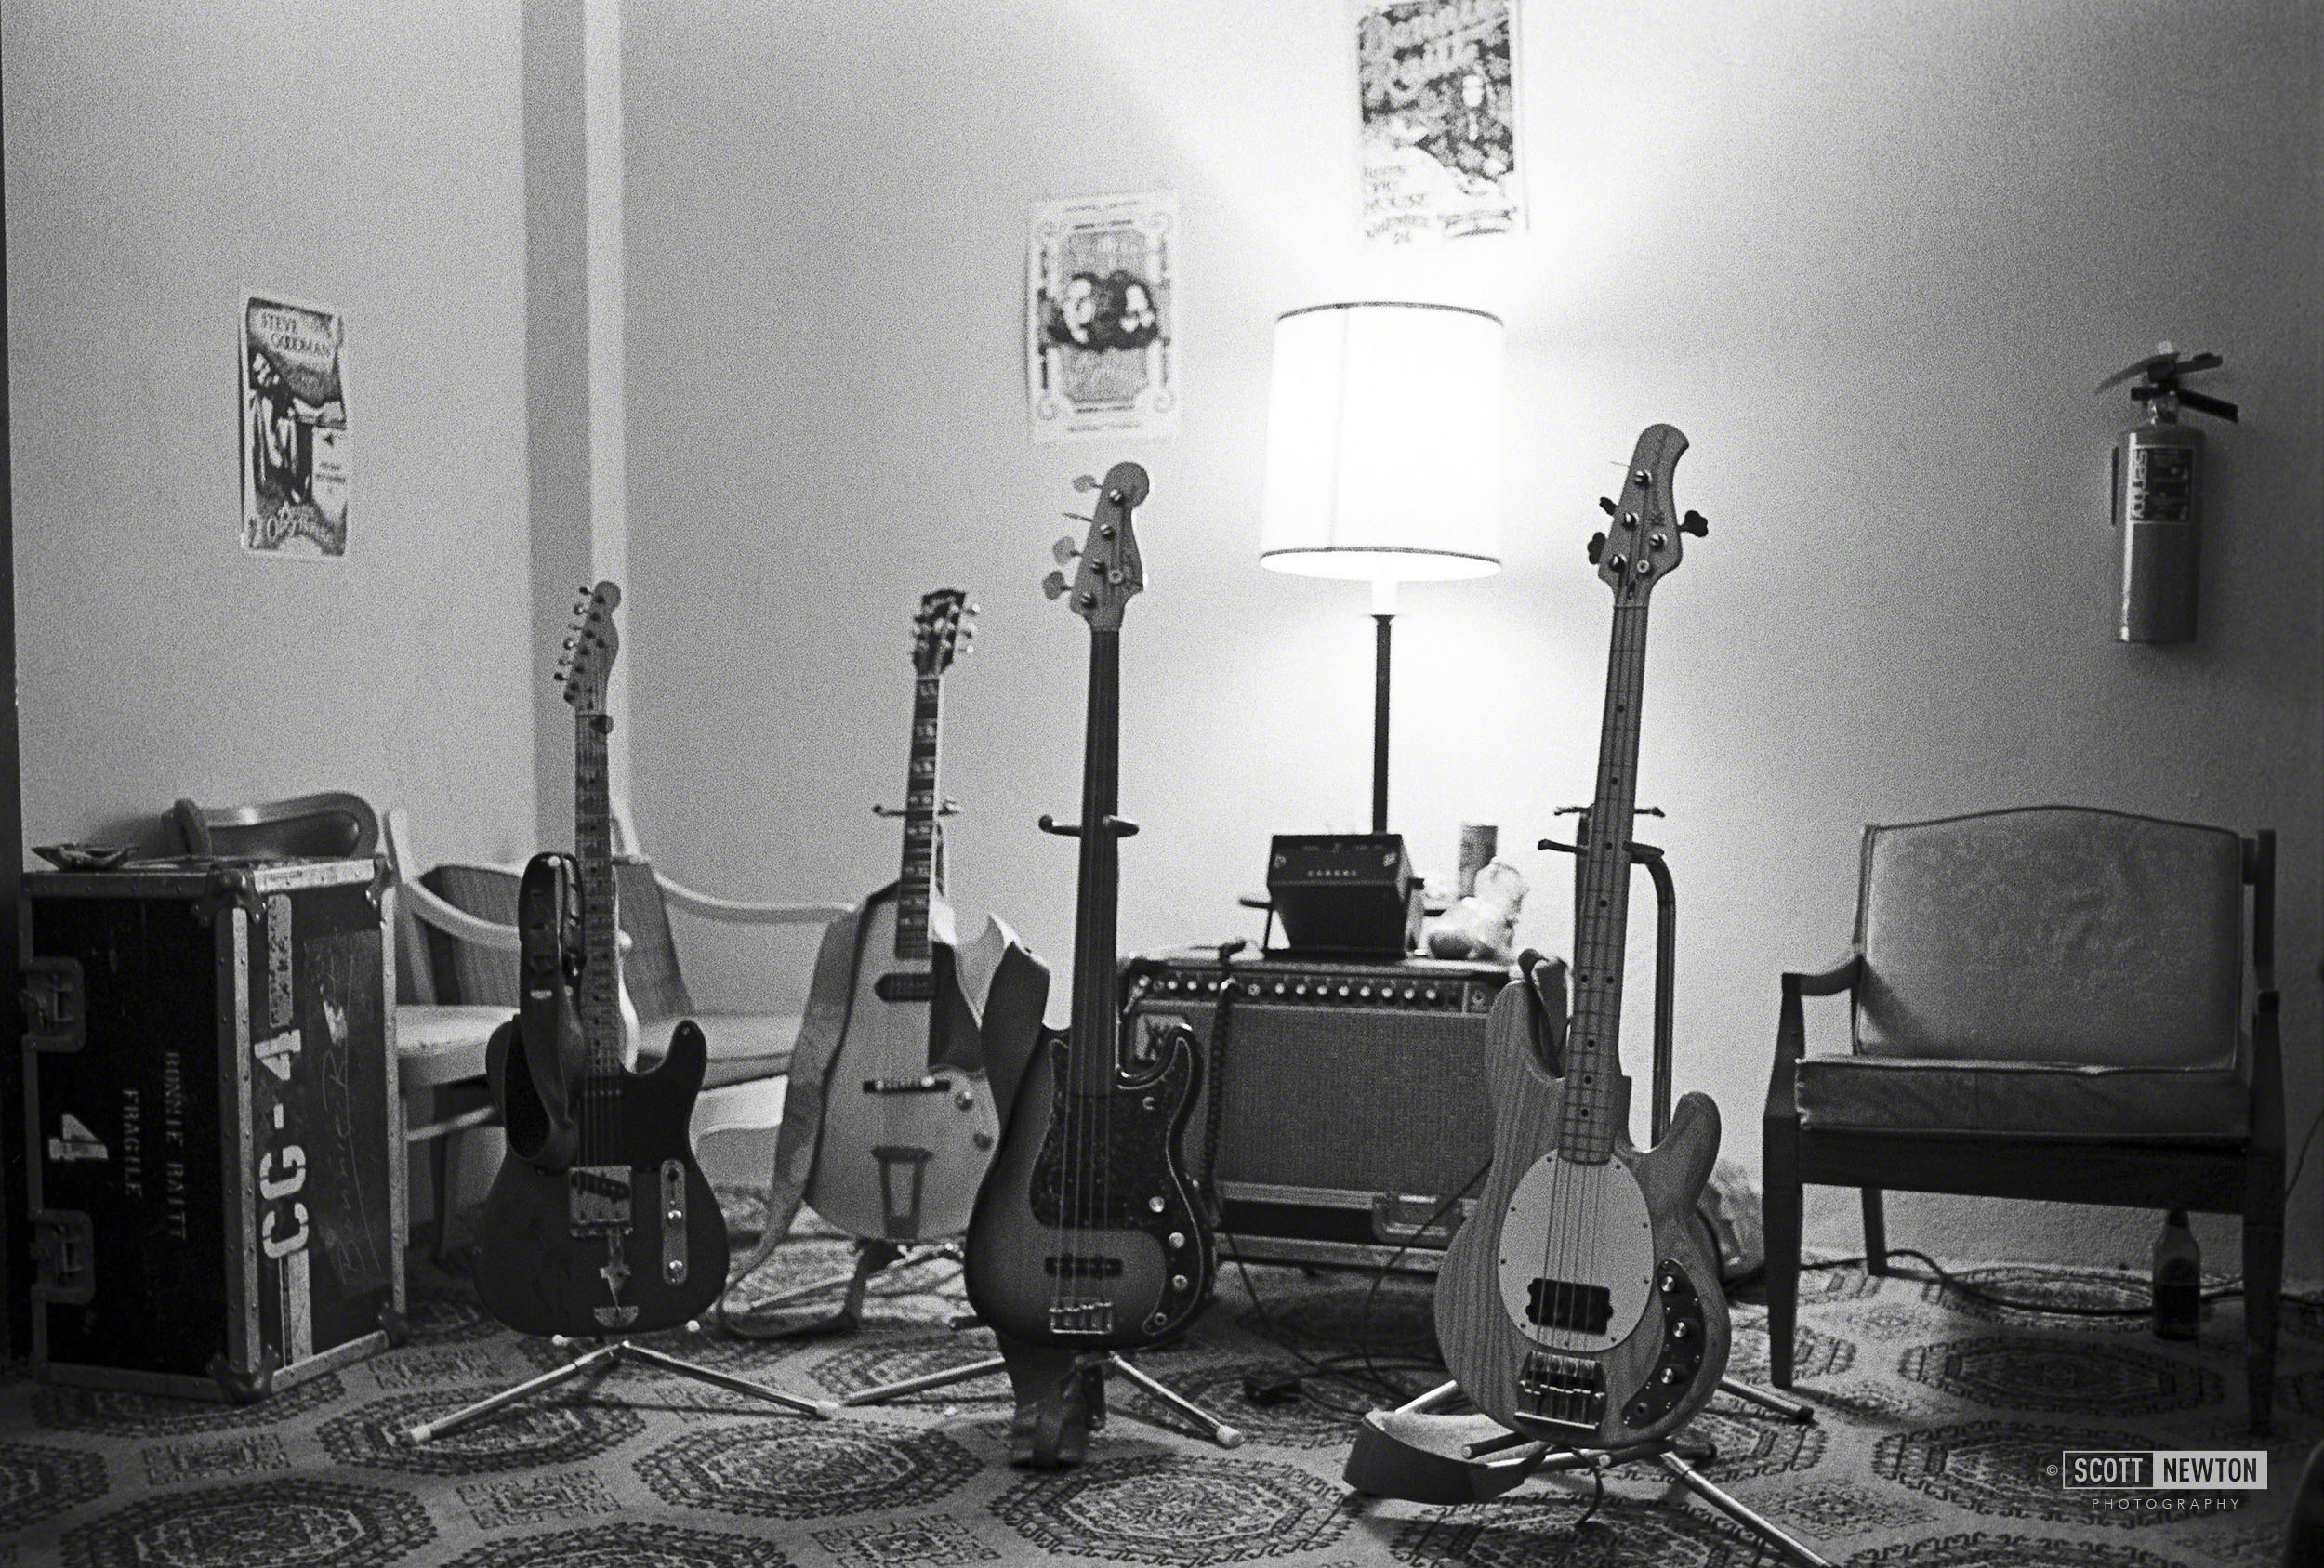 Bonnie Raitt's band's guitars. Backstage @ The Austin Opera House 1977